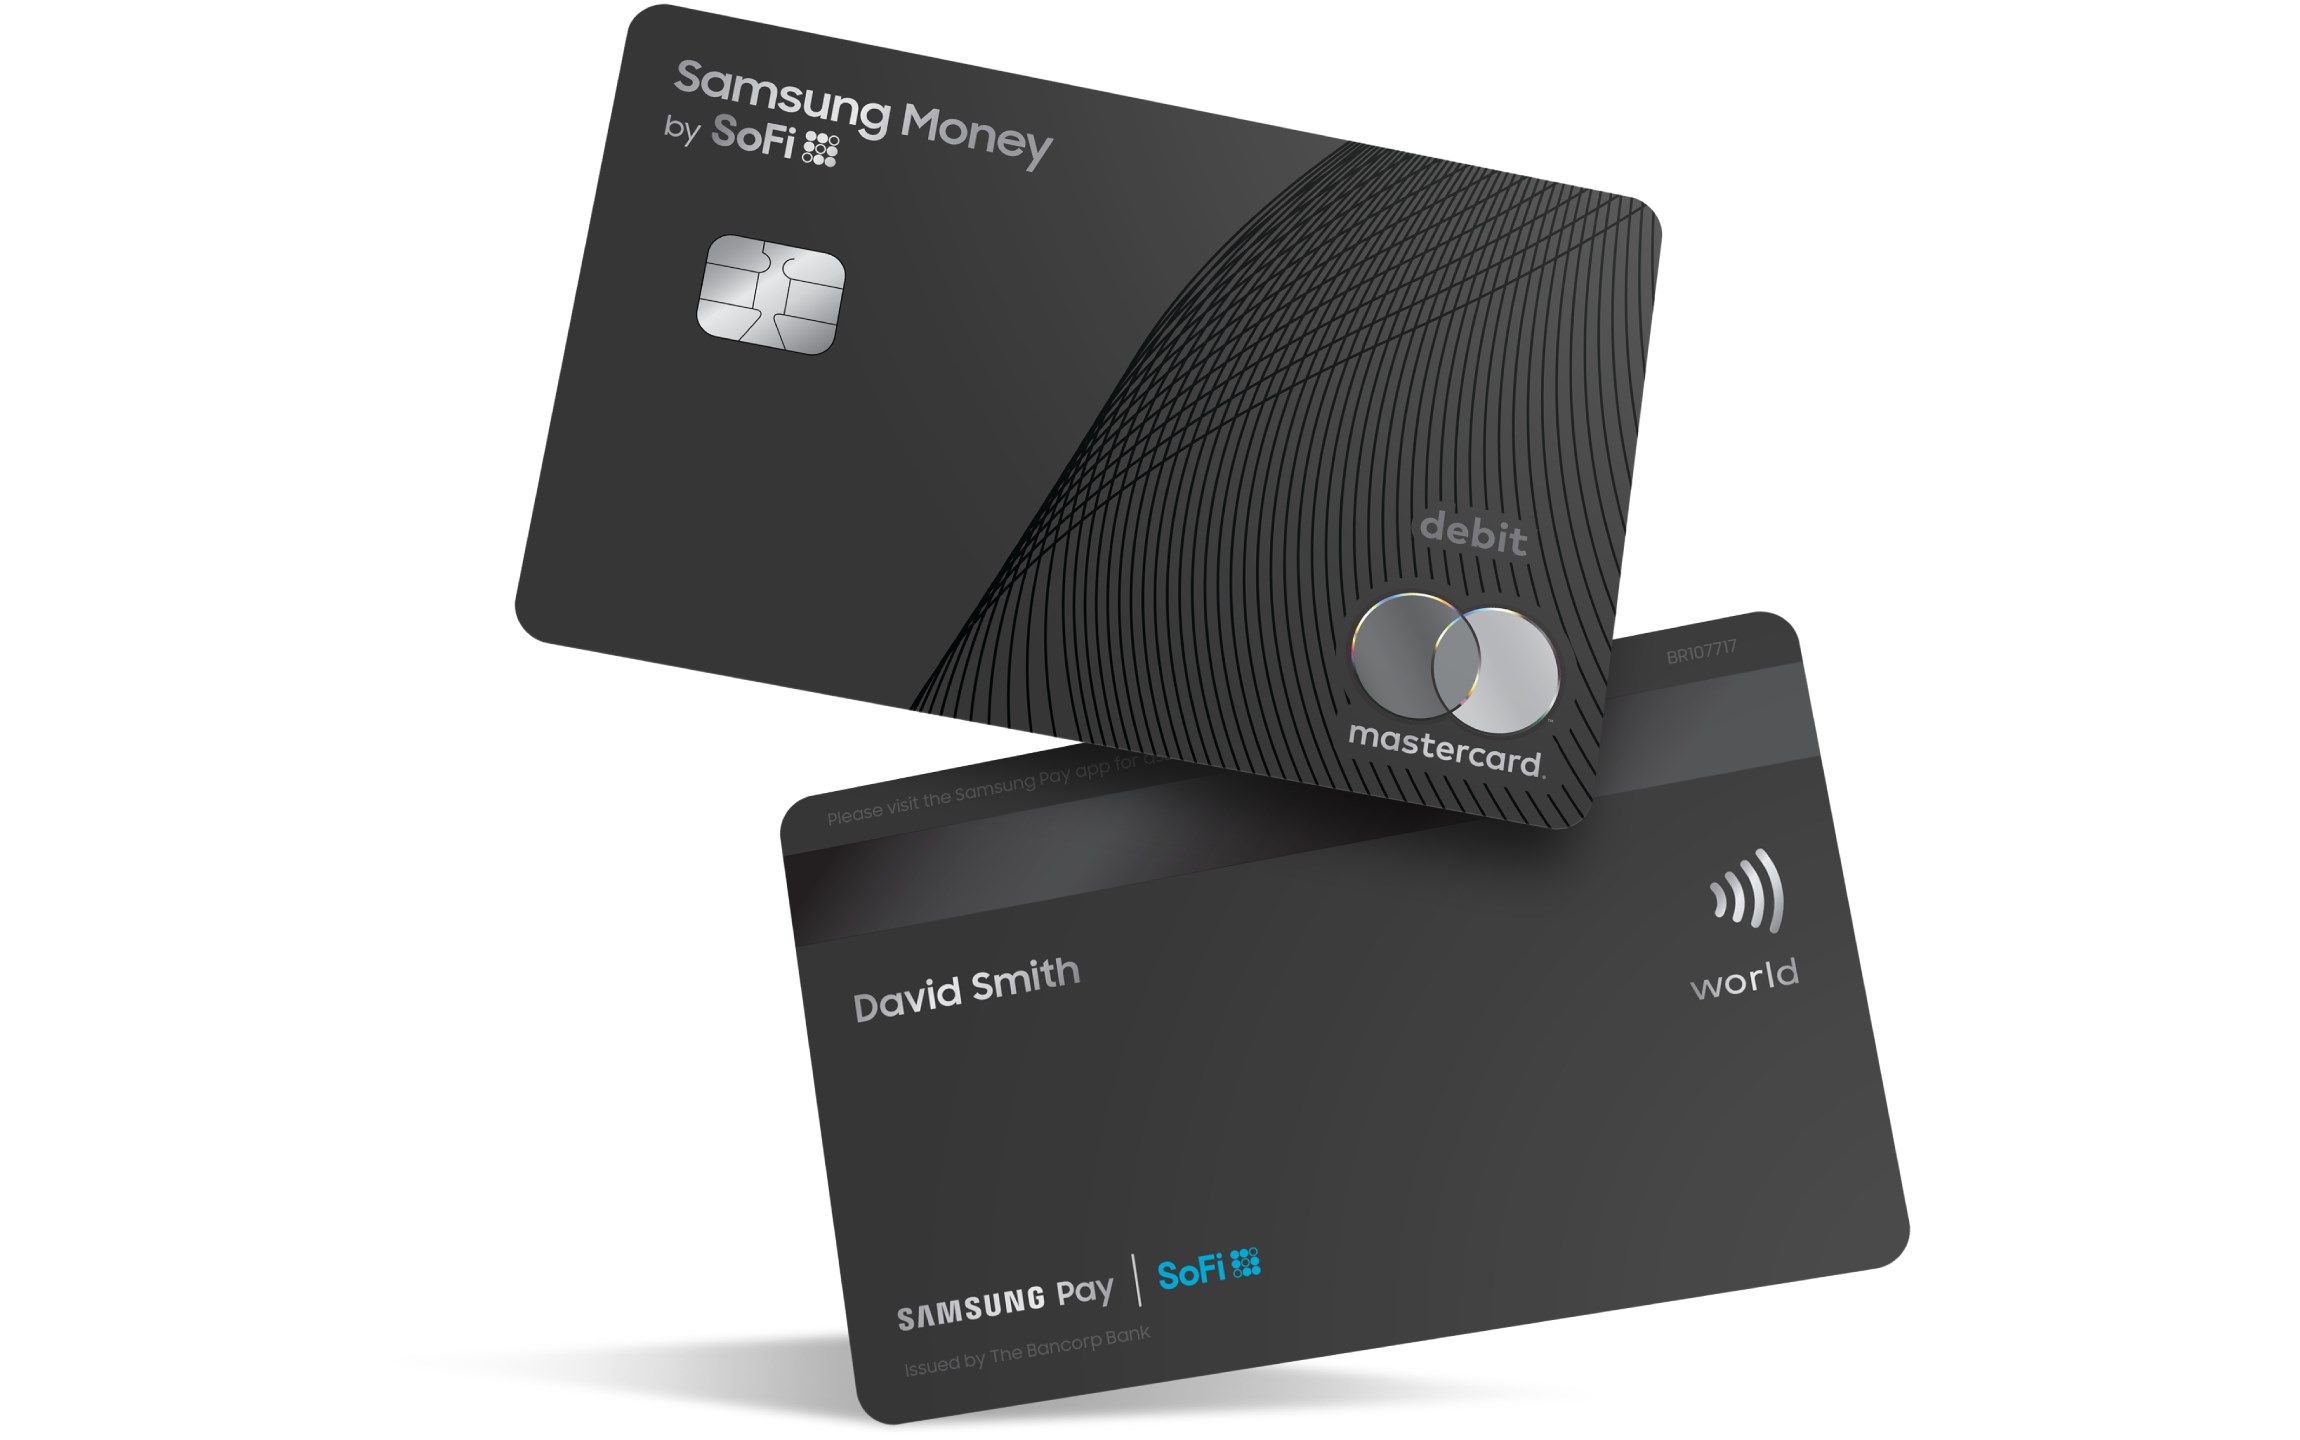 Samsung fiziksel banka kartını tanıttı